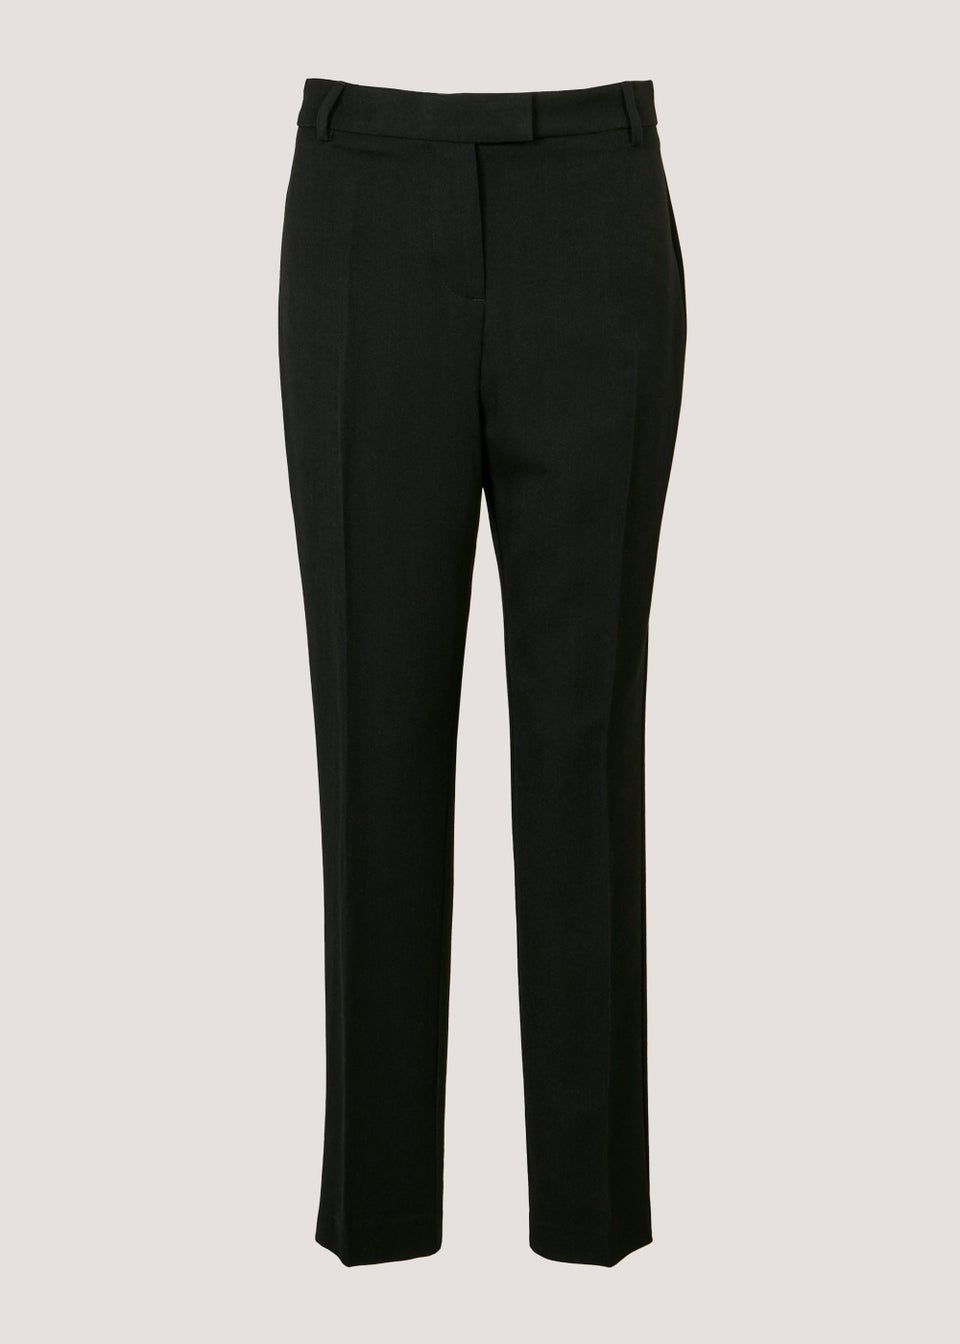 Et Vous Black Slim Fit Ankle Grazer Trousers (Long Length) - Matalan